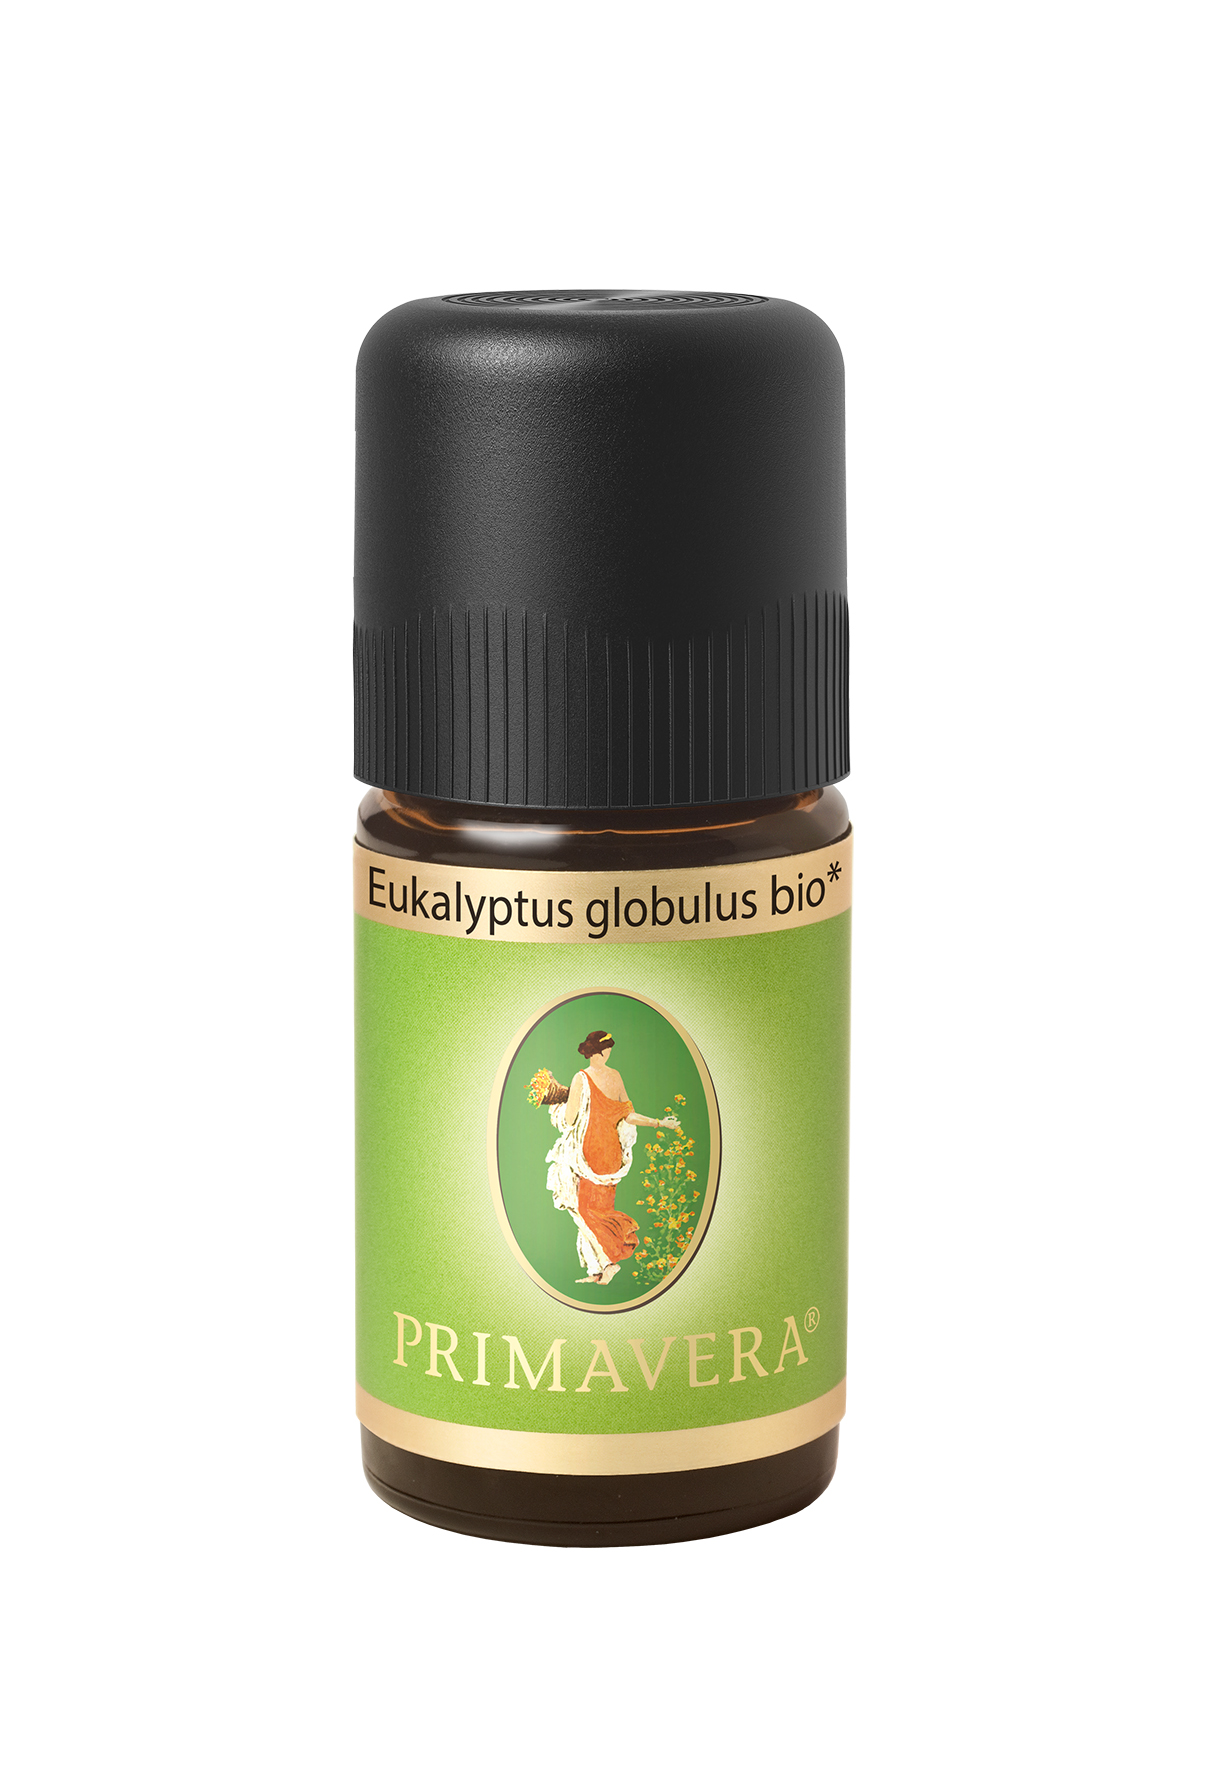 Primavera® Ätherisches Öl, Eukalyptus globulus bio